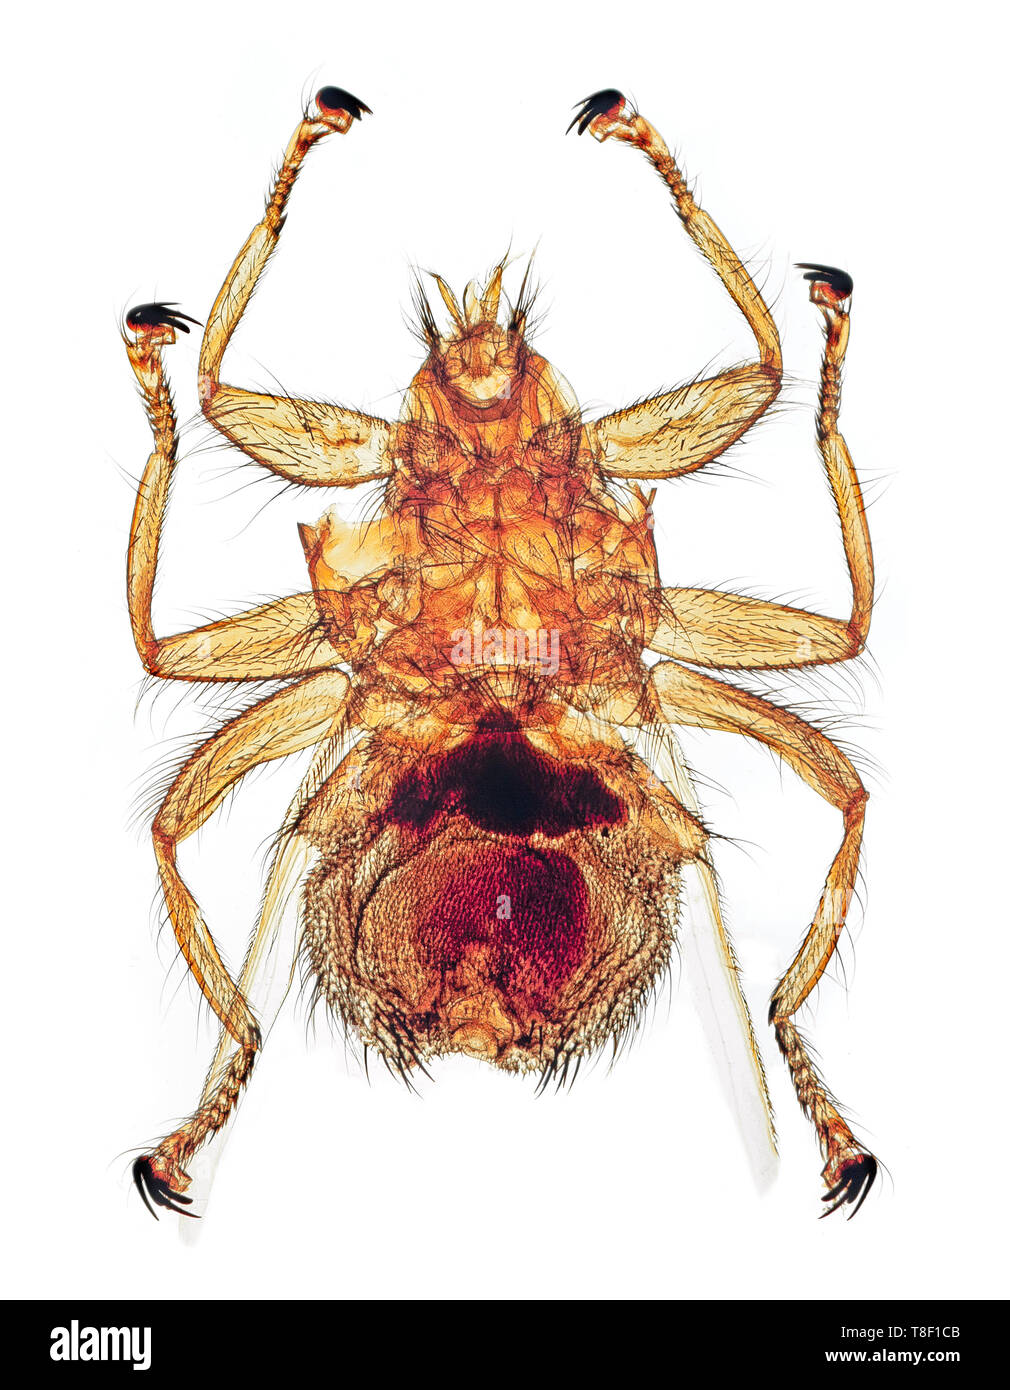 Parasites des oiseaux, Stenopteryx hirundinis, d une maison martin, une espèce de mouche dans la famille Hippoboscidae. C'est trouvé dans la région paléarctique. Banque D'Images